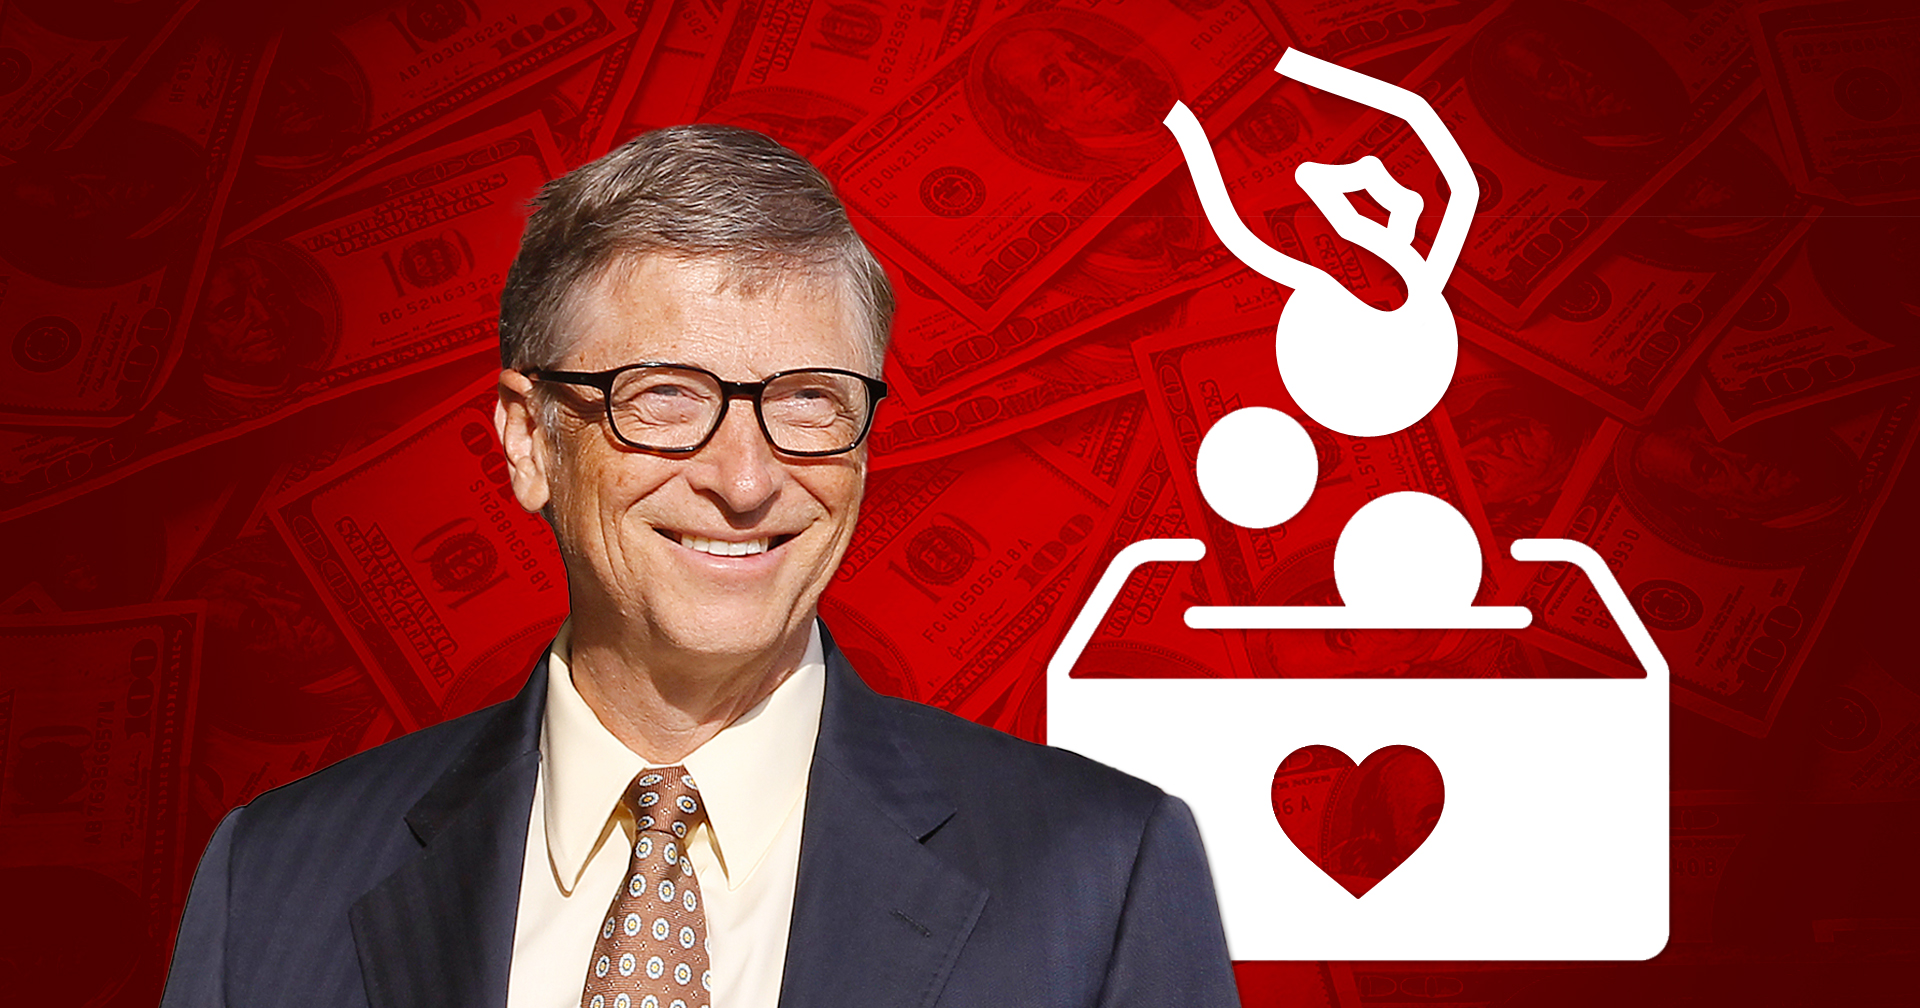 “เพื่อชีวิตที่ดีขึ้น” เมื่อ Bill Gates พร้อมบริจาคเงินเกือบทั้งหมดเพื่อการกุศล แล้วจะเกิดอะไรขึ้น?